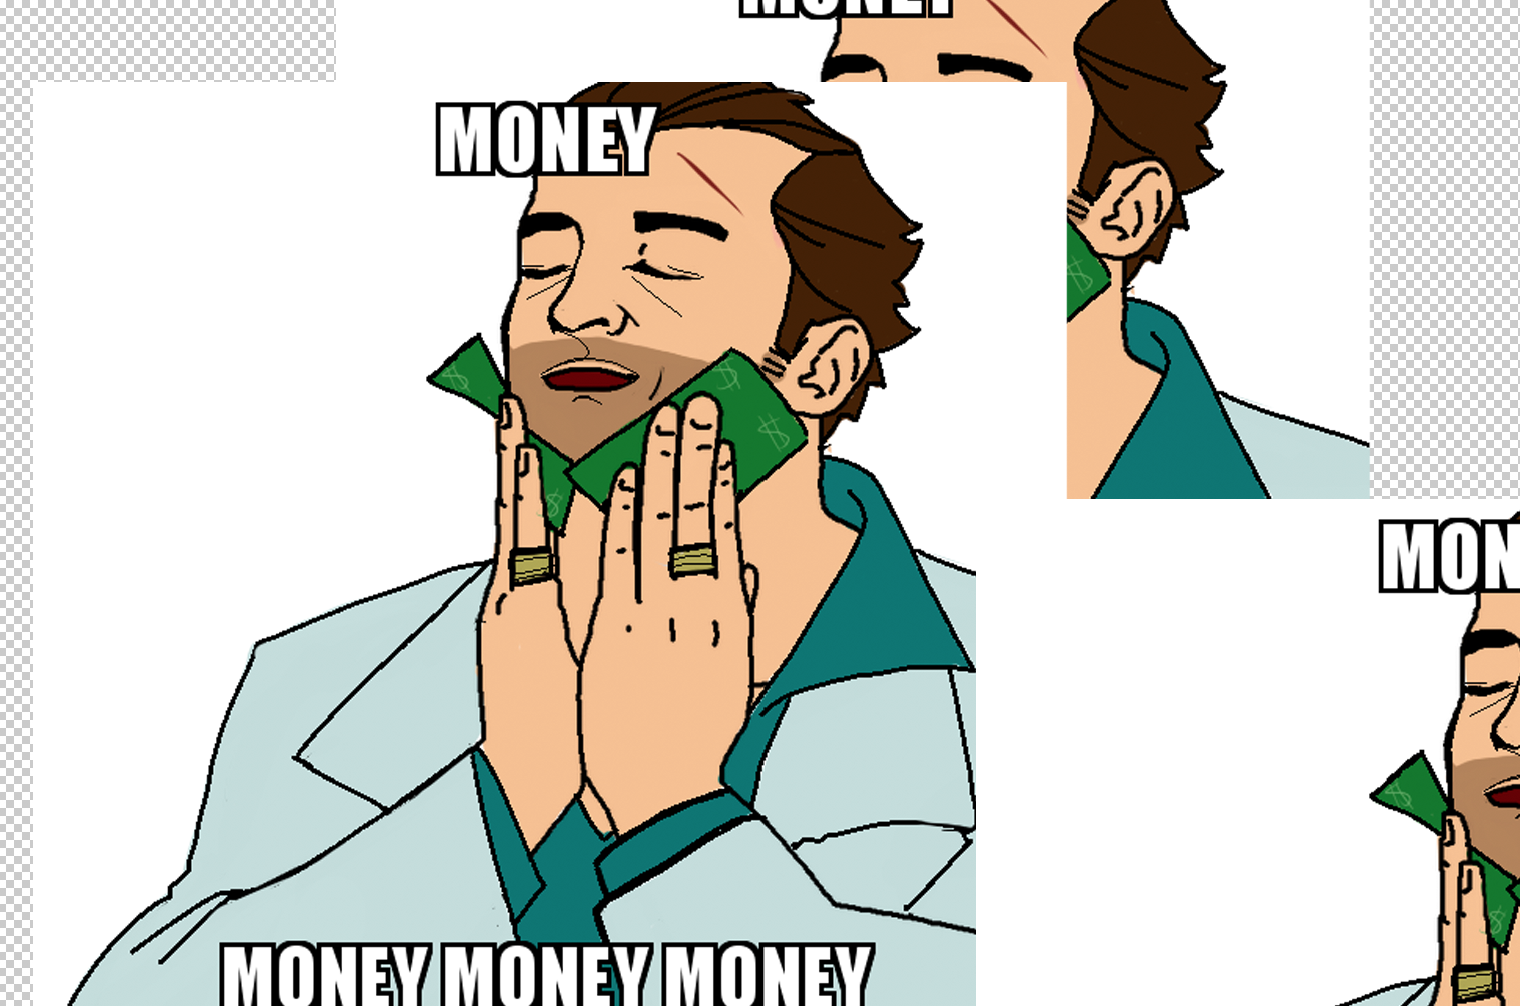 Money meme. Money Мем. Мемы про деньги. Денежки Мем. Мемы про трату денег.